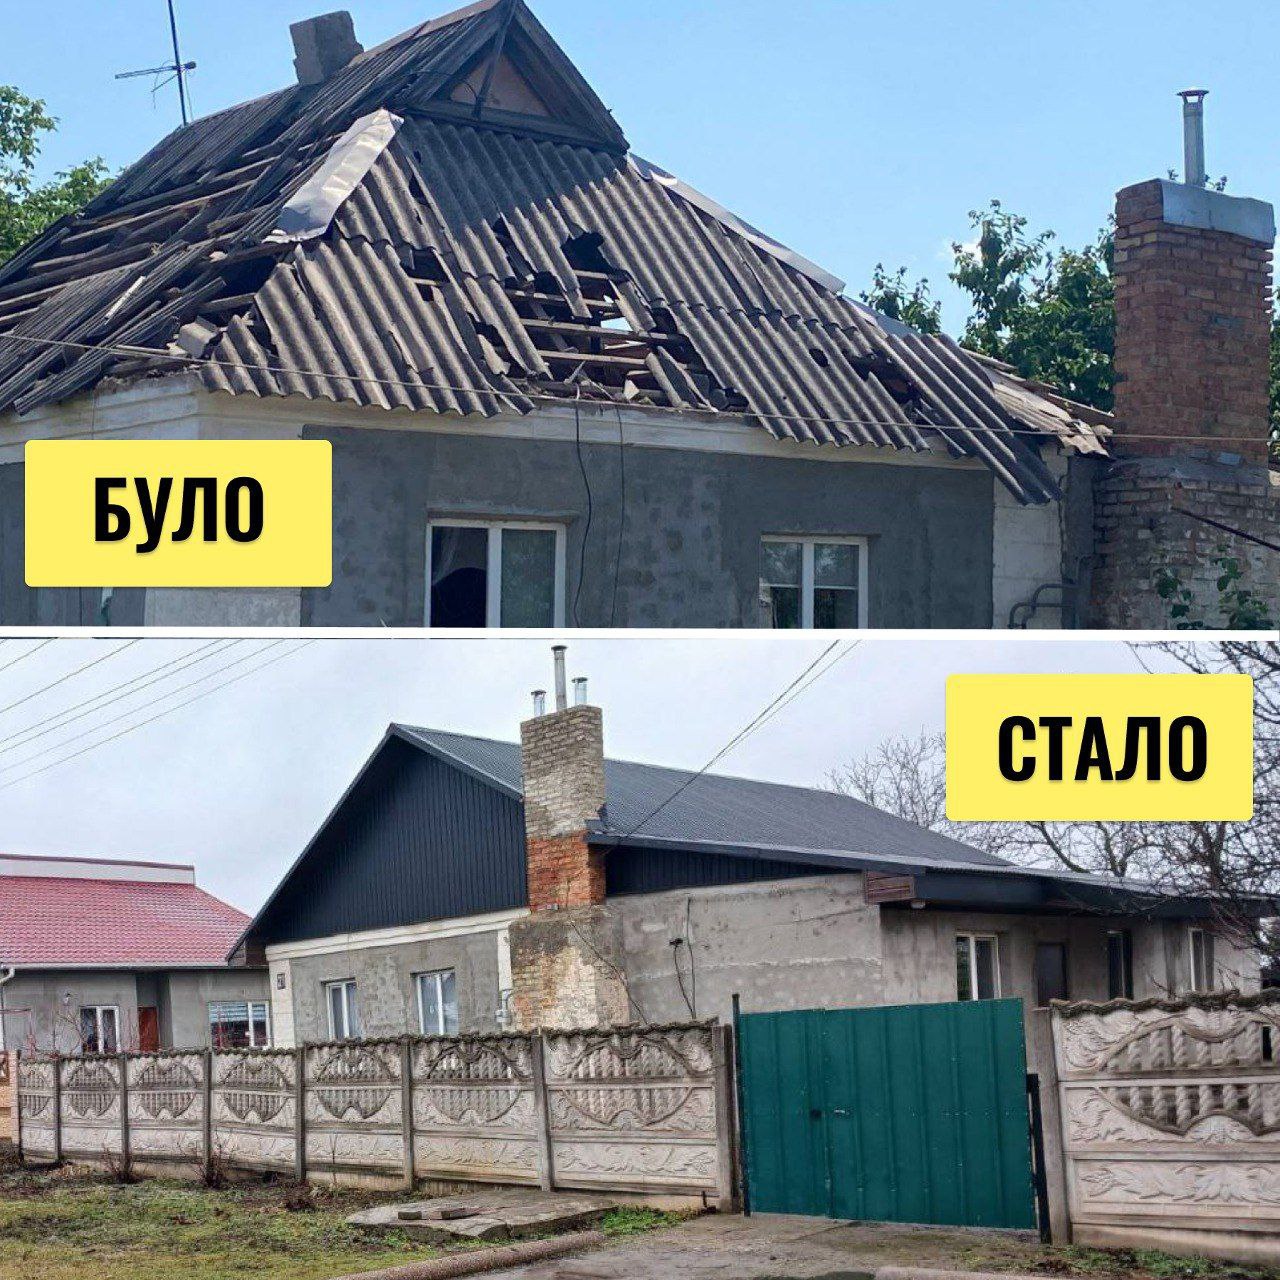 1,5 тисячі родин Дніпропетровщини отримали допомогу - Дніпро Регіон